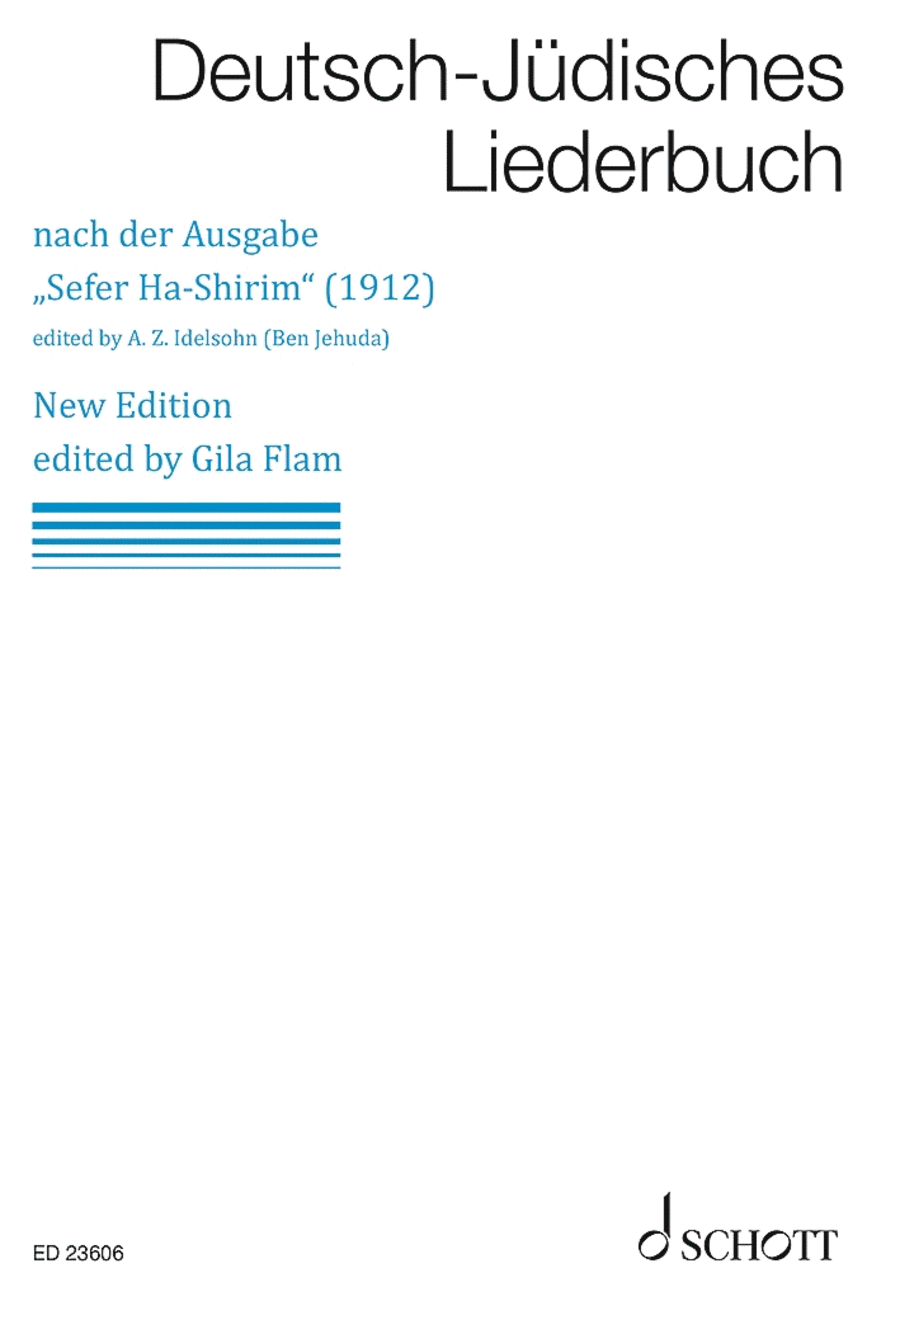 Deutsch-Jüdisches Liederbuch [German-Jewish Songbook]